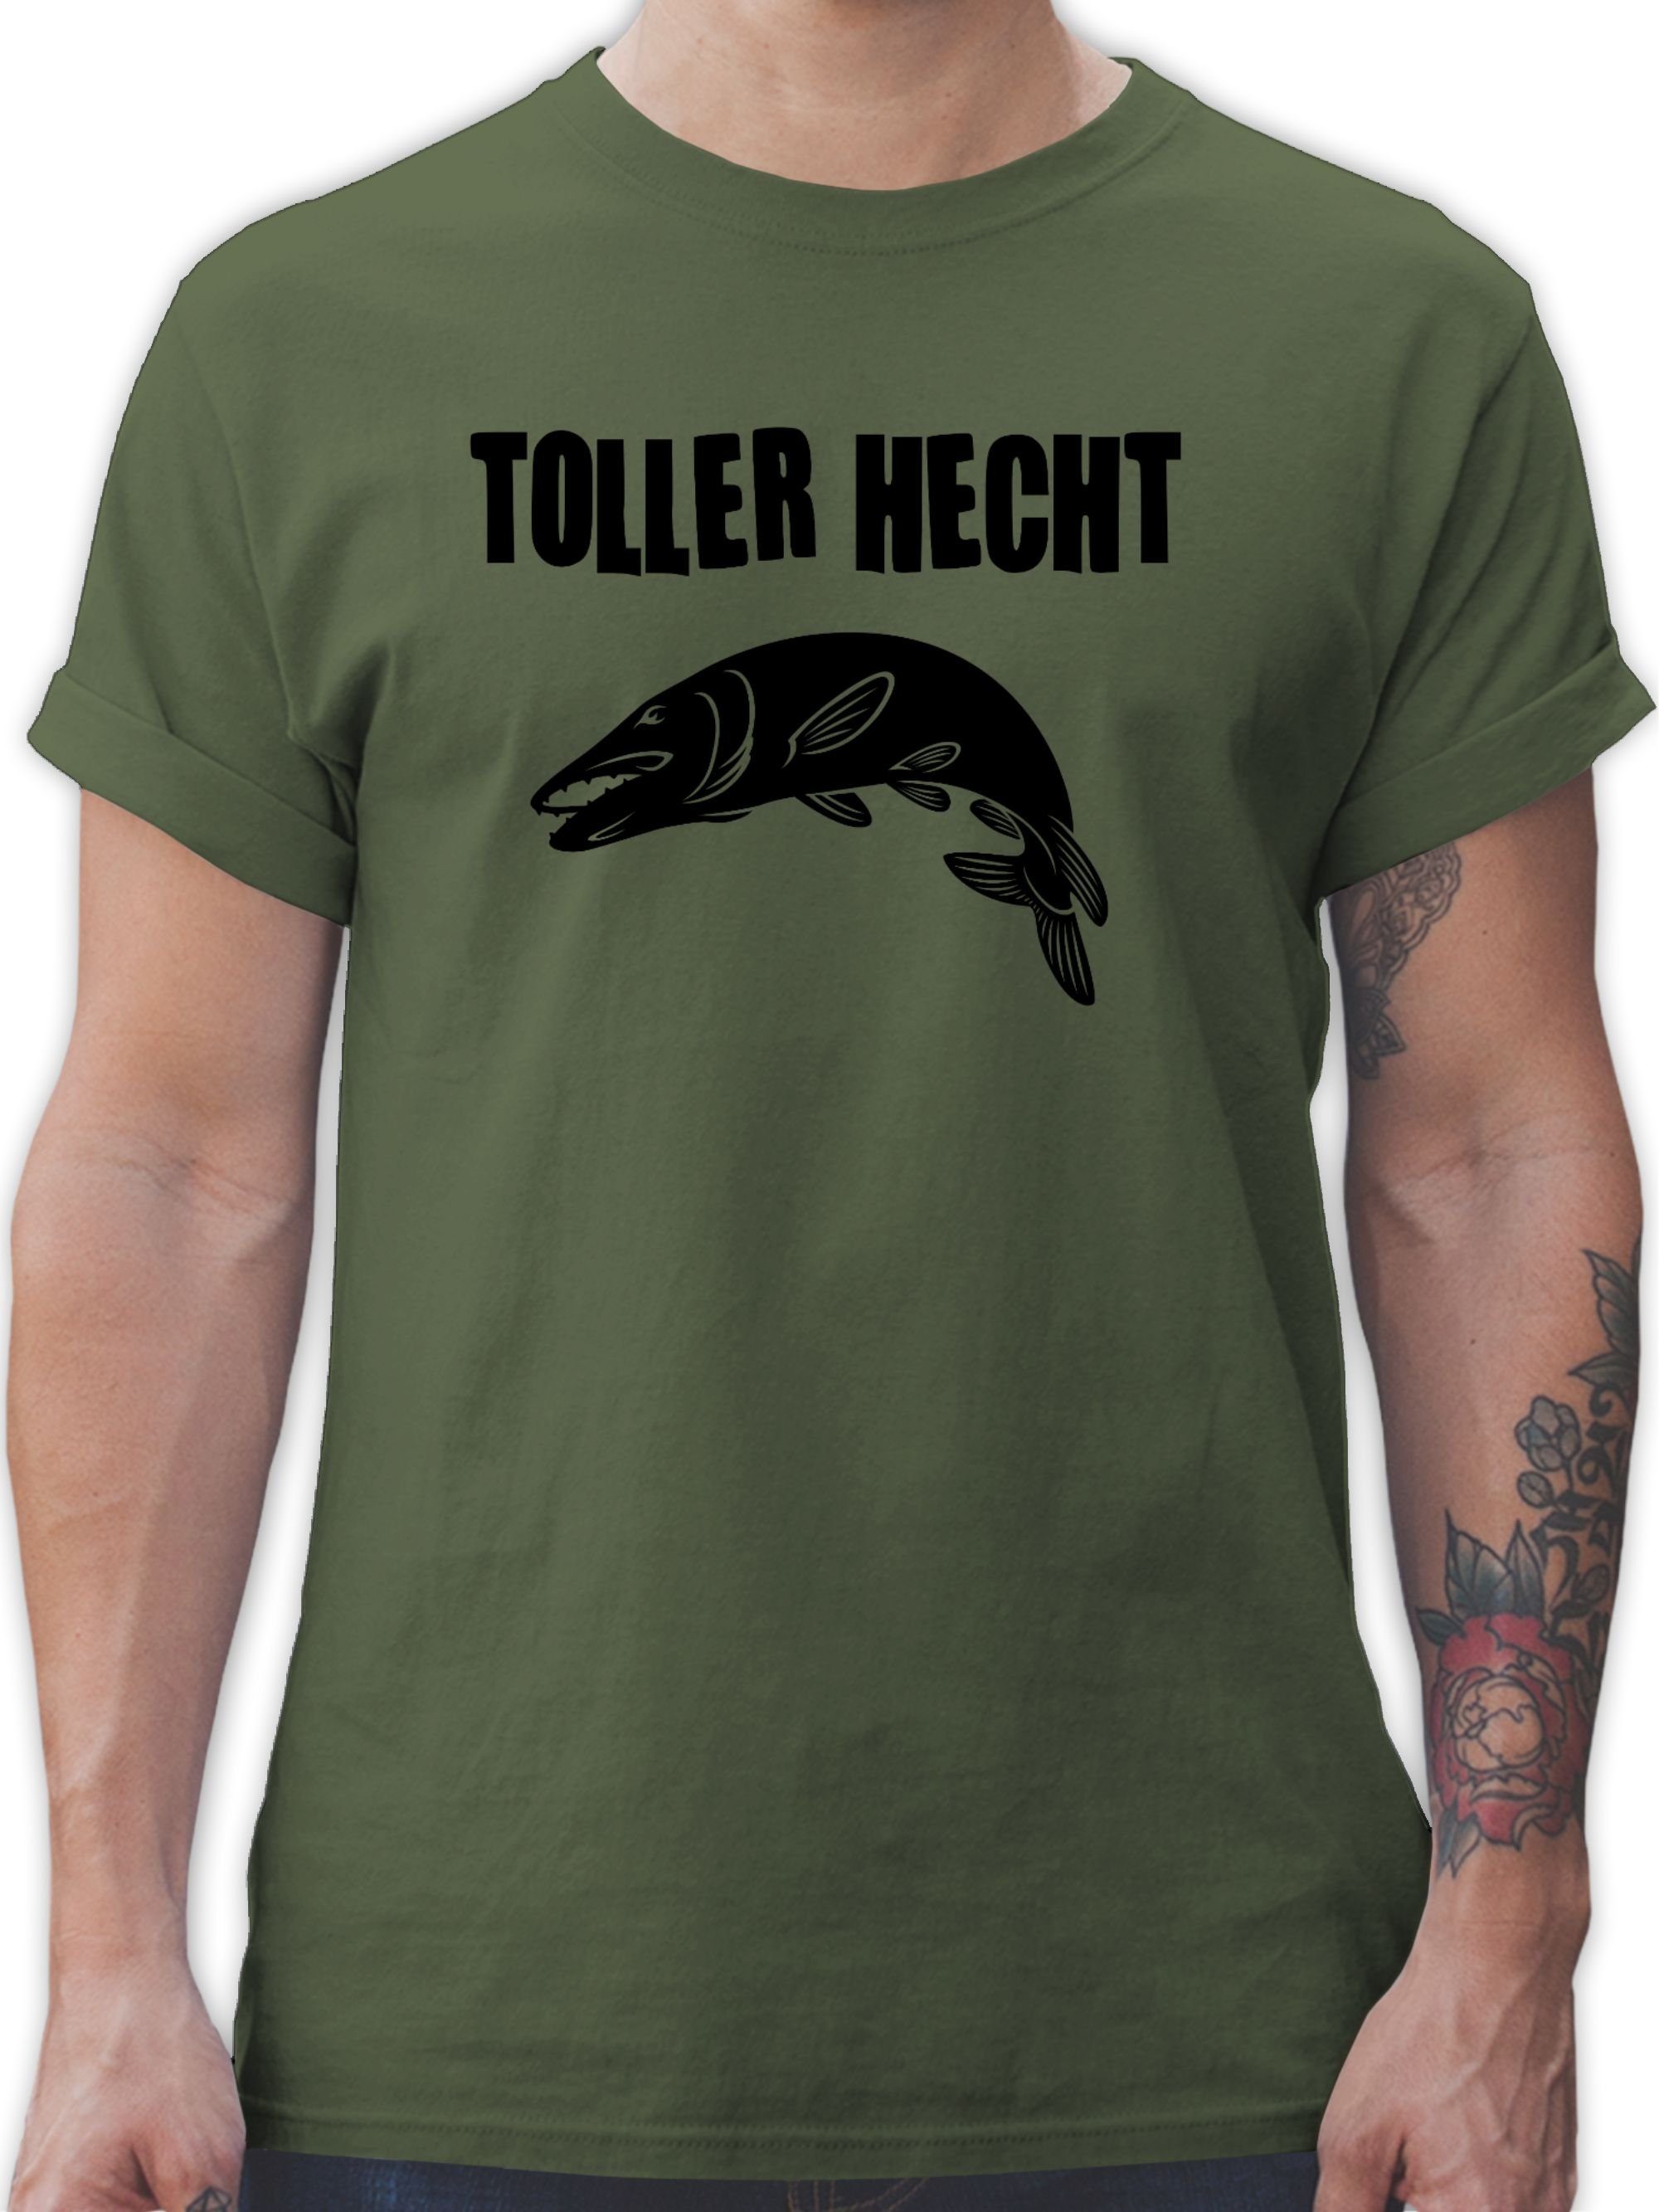 Grün T-Shirt Geschenke Hecht Angler 1 Toller Shirtracer Army